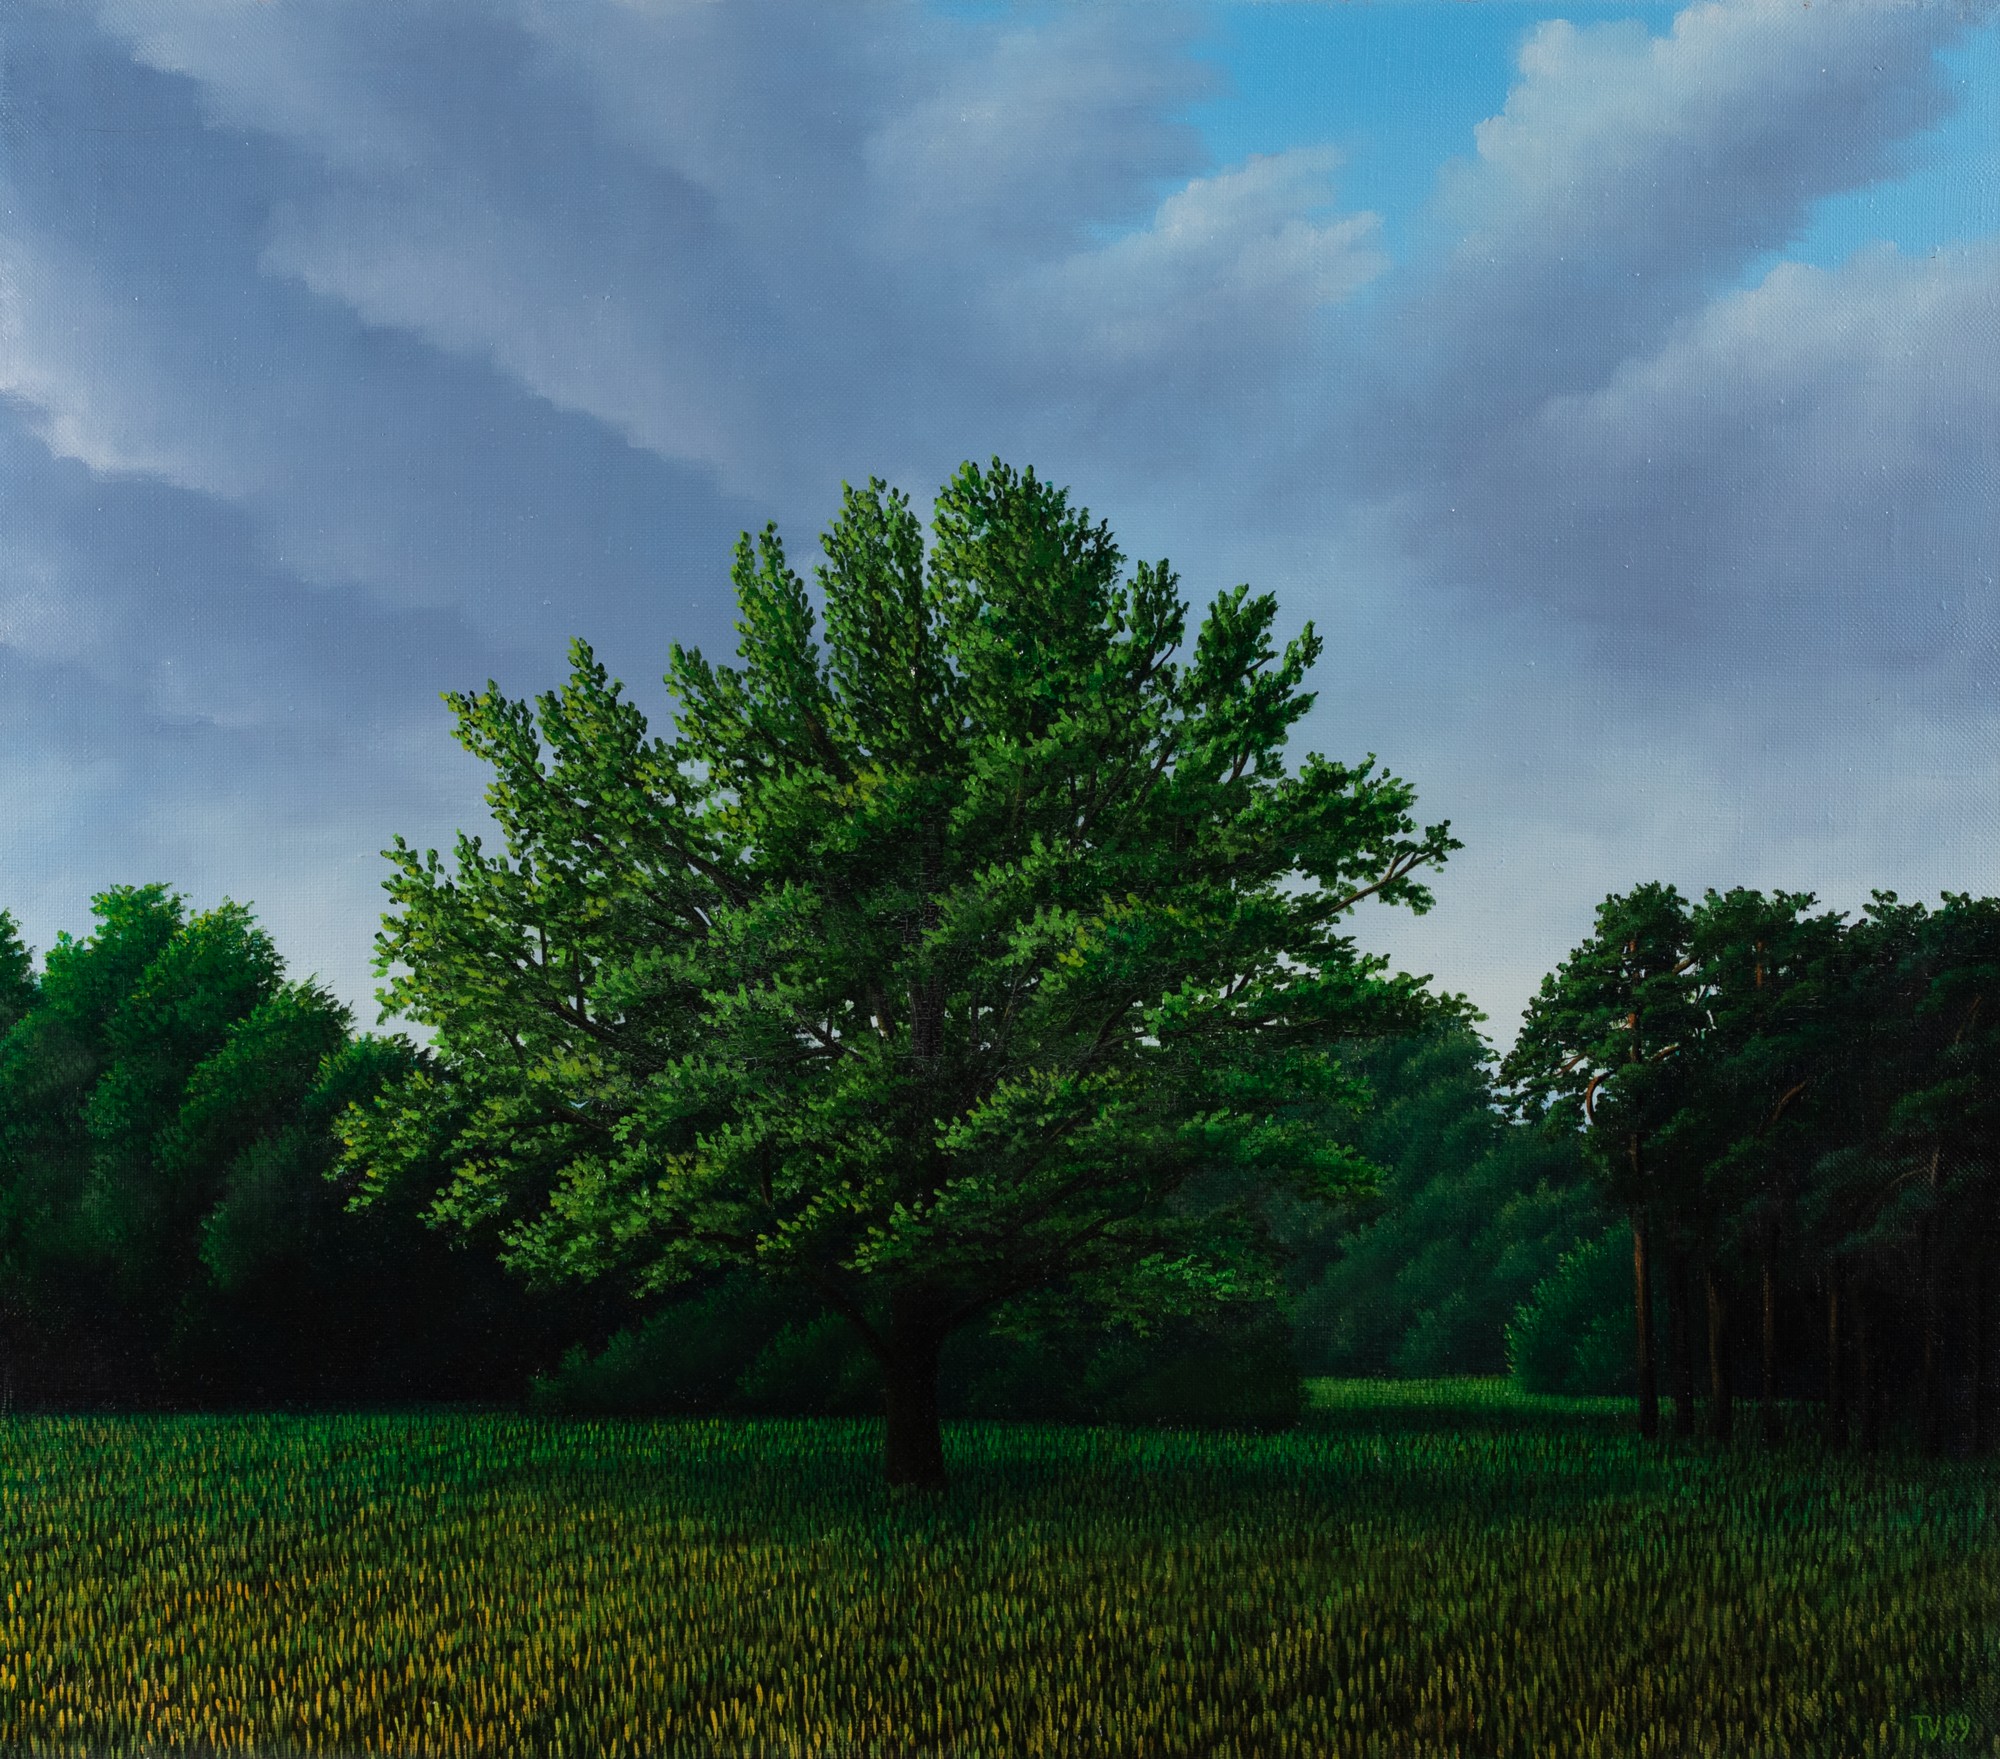 Toomas Vint "Tree on a Field"